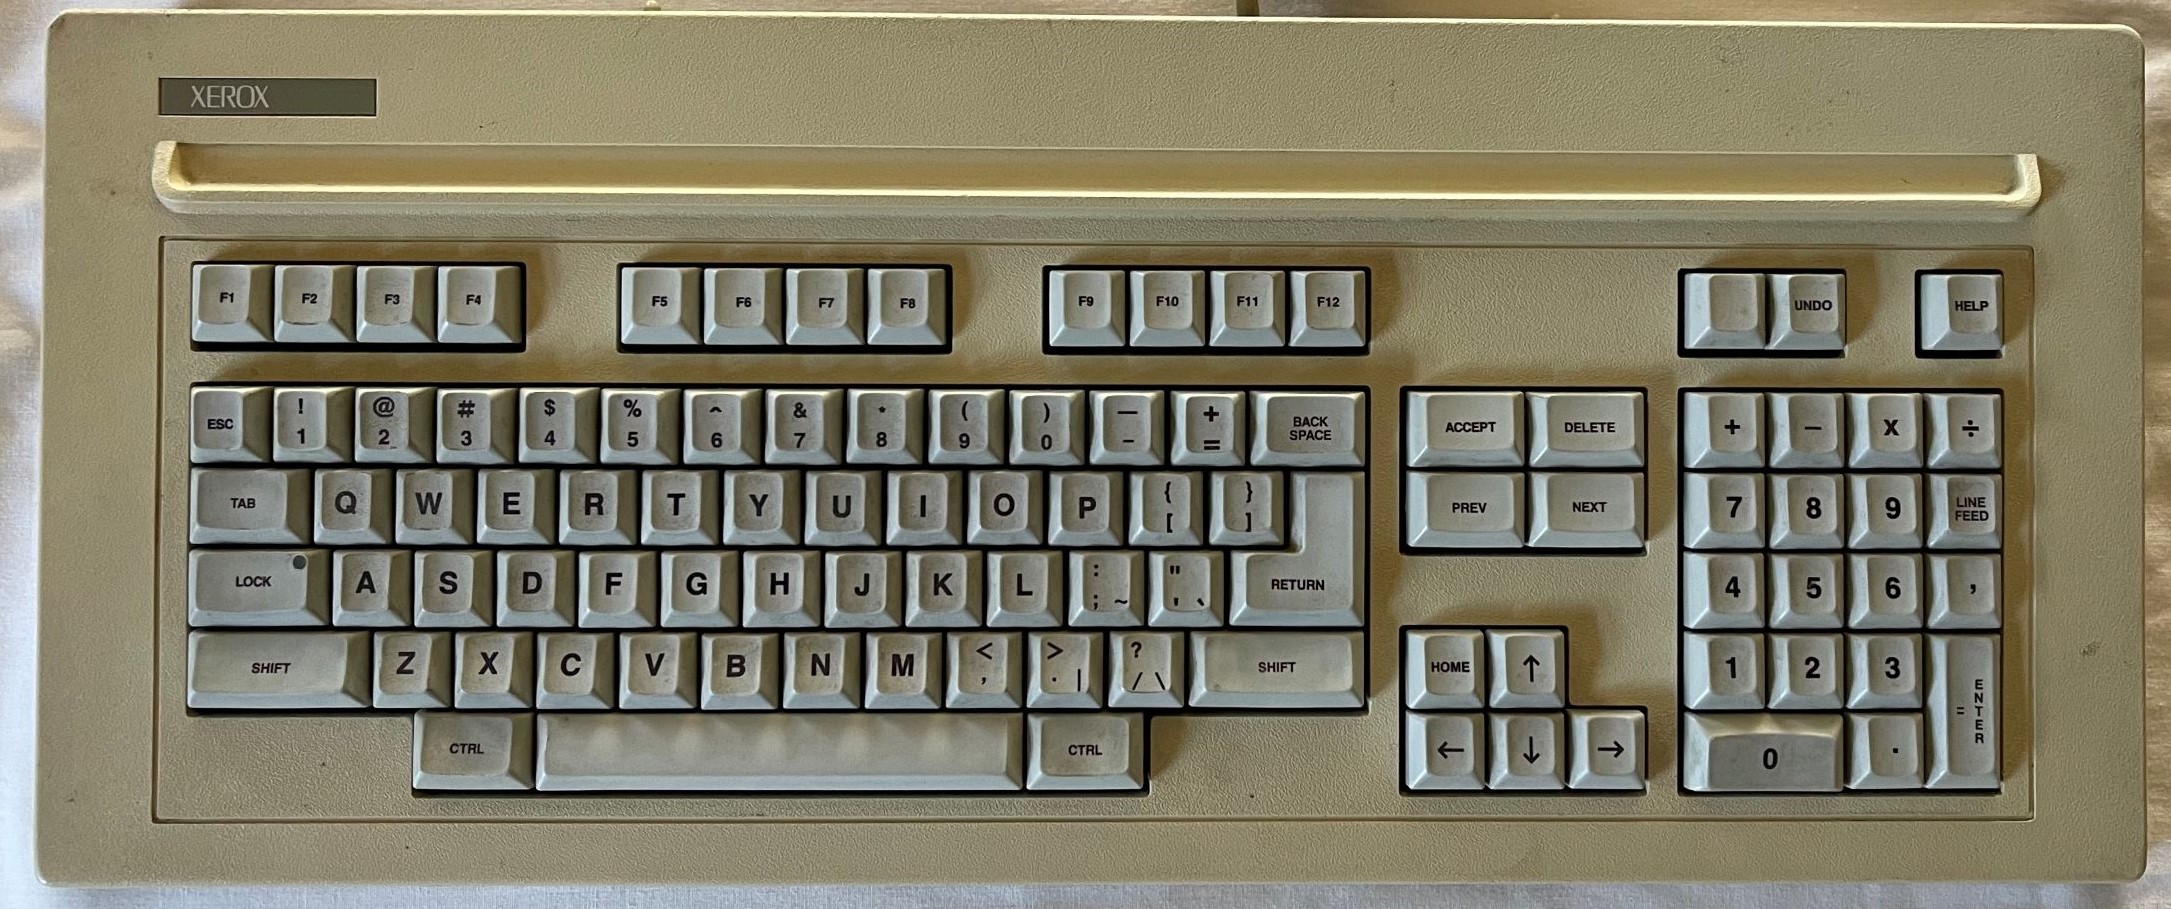 Xerox-G25-case.jpg